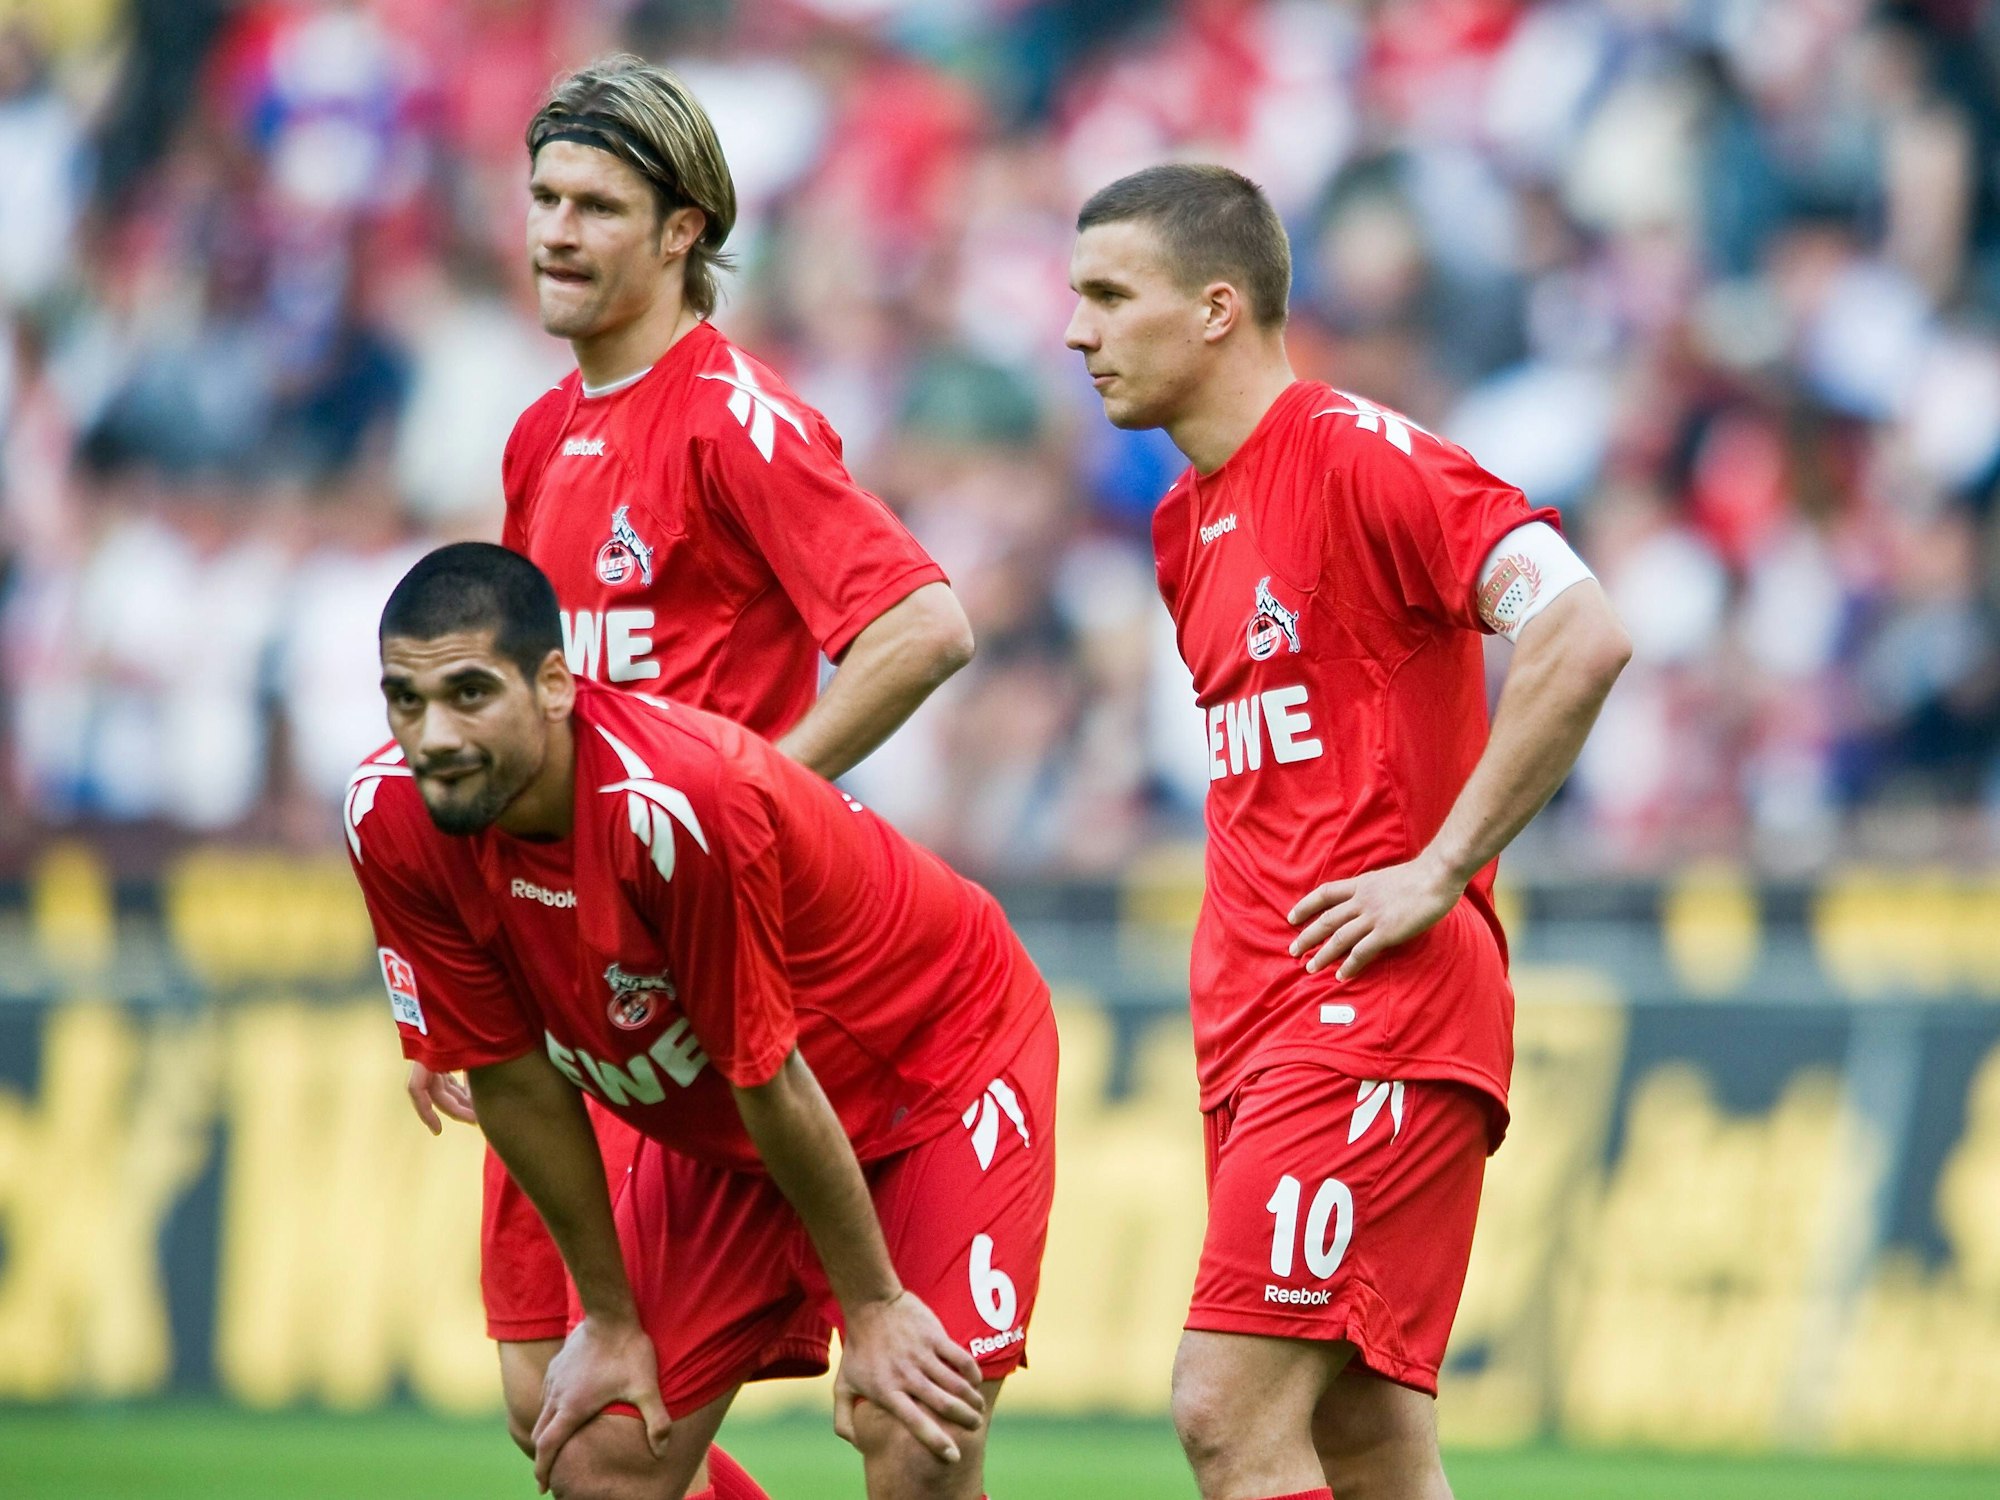 Taner Yalcin, Lukas Podolski und Martin Lanig stehen nach einer Niederlage des 1. FC Köln auf dem Rasen.